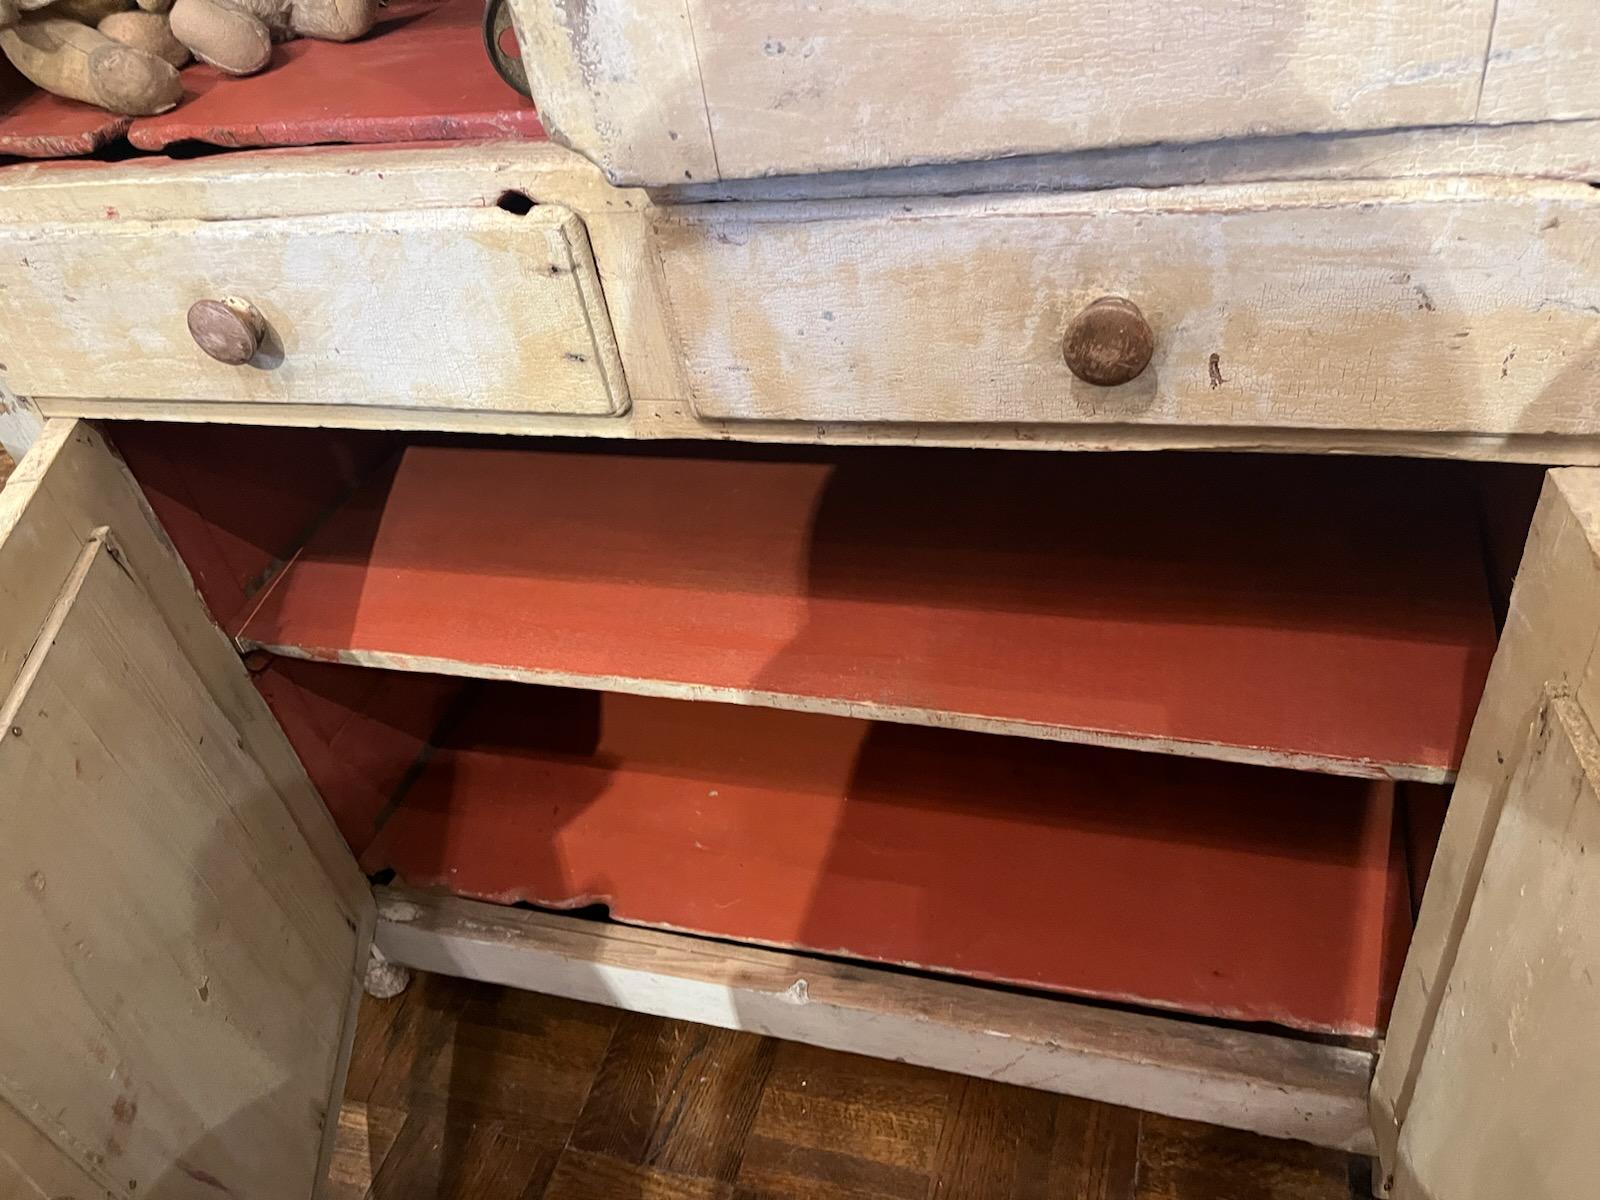 19. Jahrhundert Original cremefarbener Tortenschrank mit lachsfarbener Innenausstattung. Der Zustand ist sehr gut und stabil, die gestanzten Dosen befinden sich an den Seiten des Schranks und die vier Türen sind verkleidet.  Dieser Tortentresor